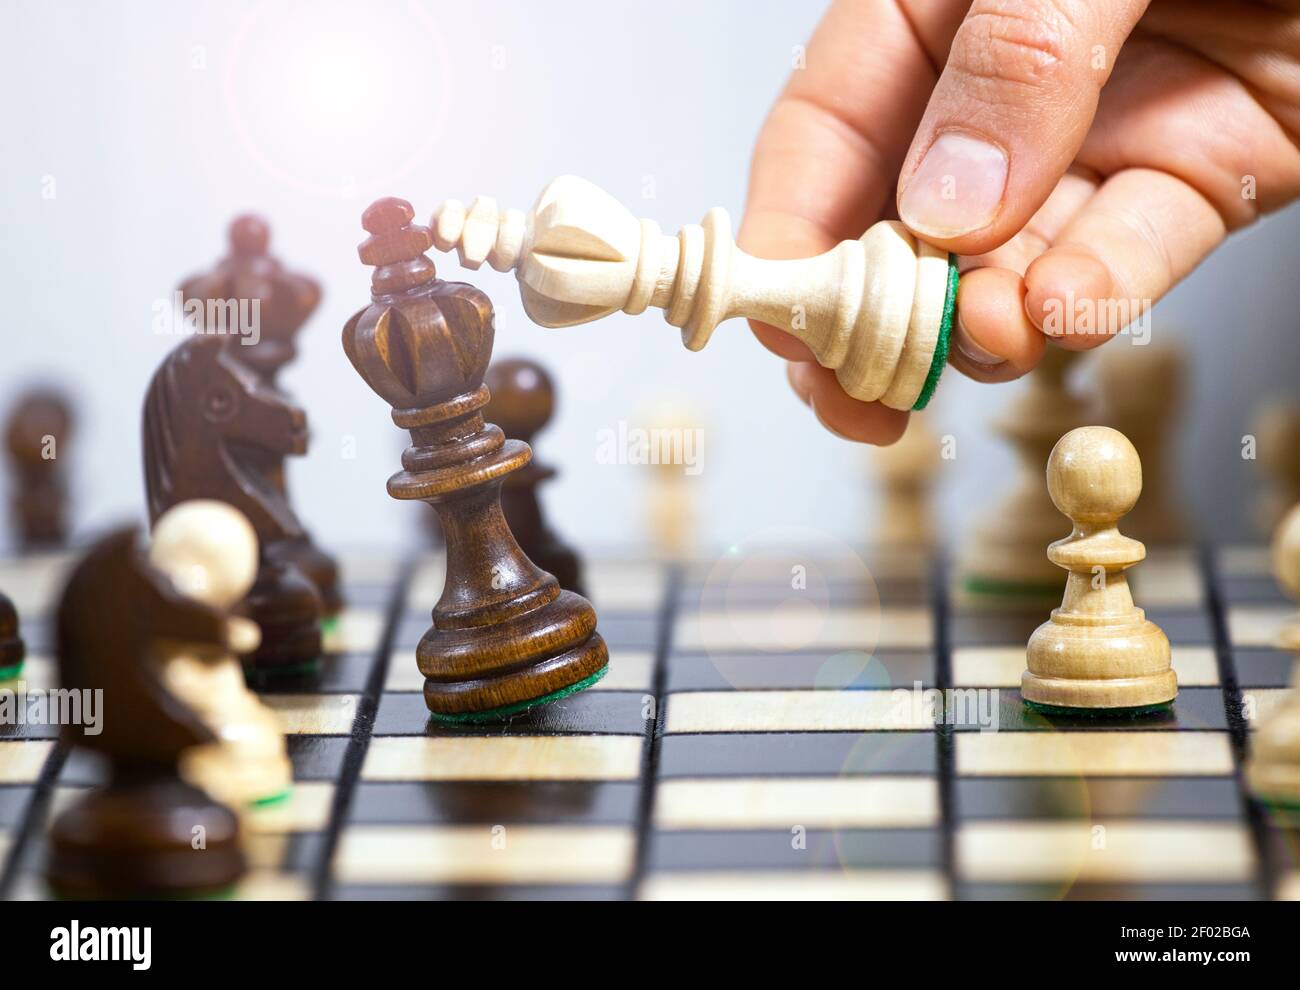 Deux rois d'échecs debout les uns à côté des autres, prendre des décisions et prendre une stratégie, victoire dans un jeu d'échecs, Hobby qui stimule l'activité du cerveau Banque D'Images